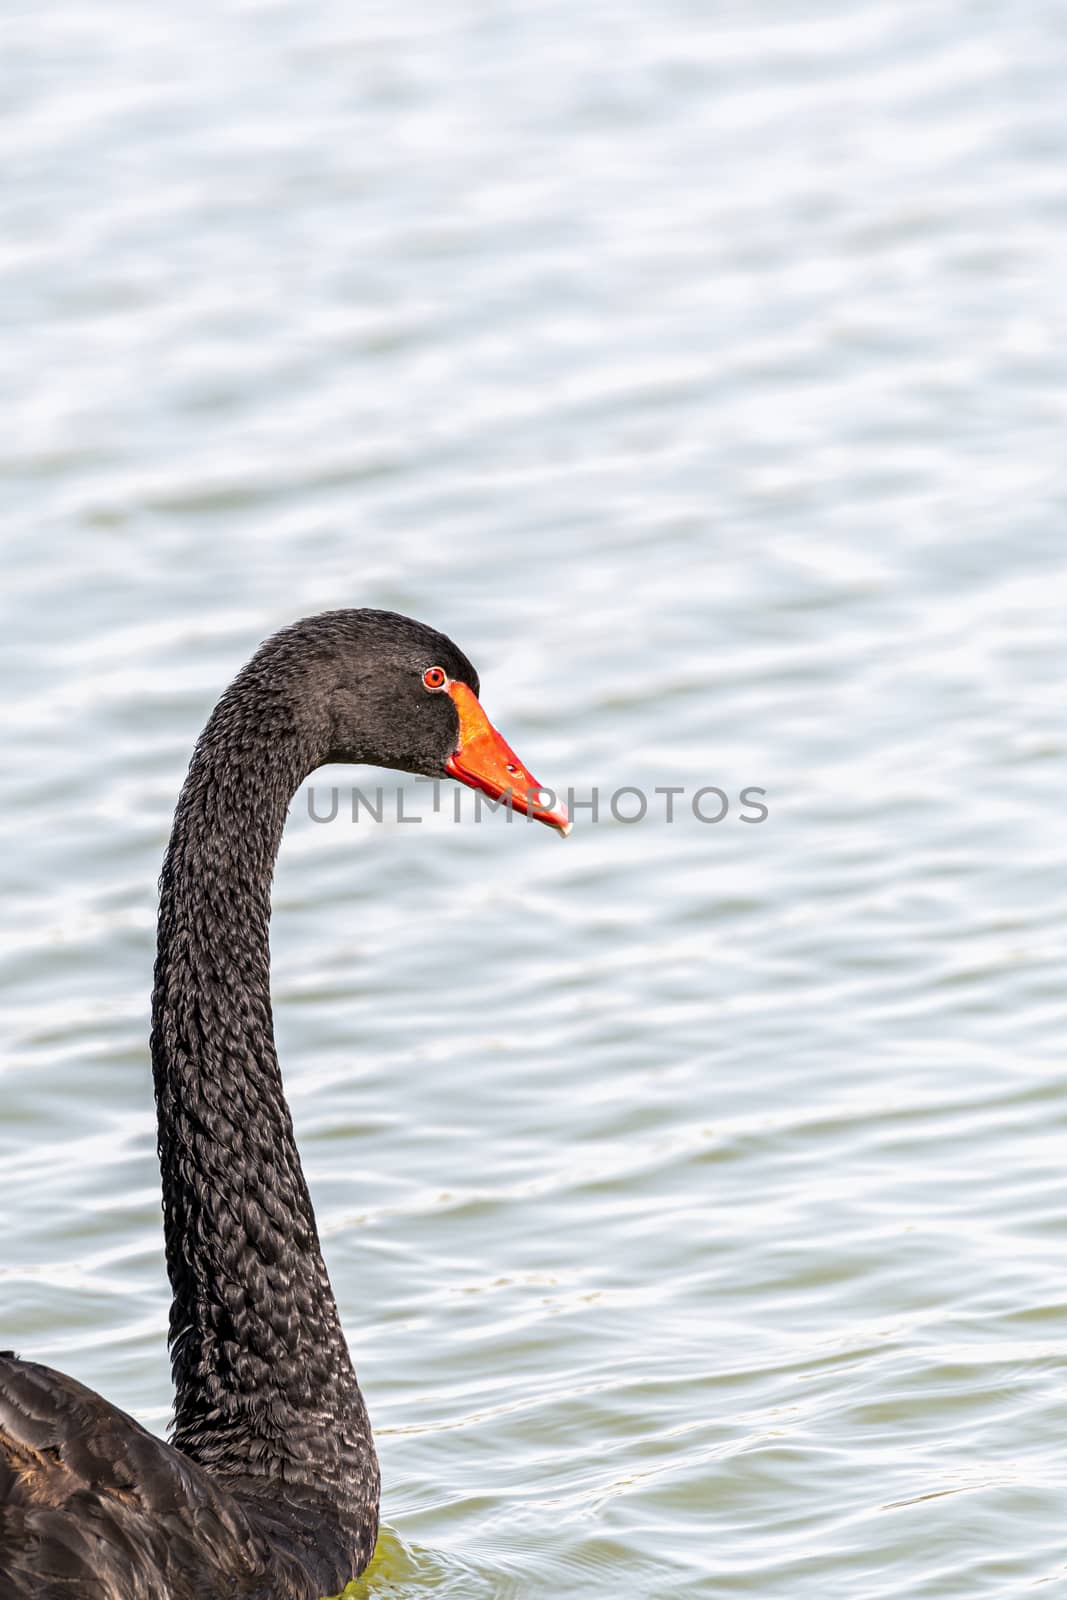 Black swan, Al Qudra Lakes, Dubai, UAE by GABIS